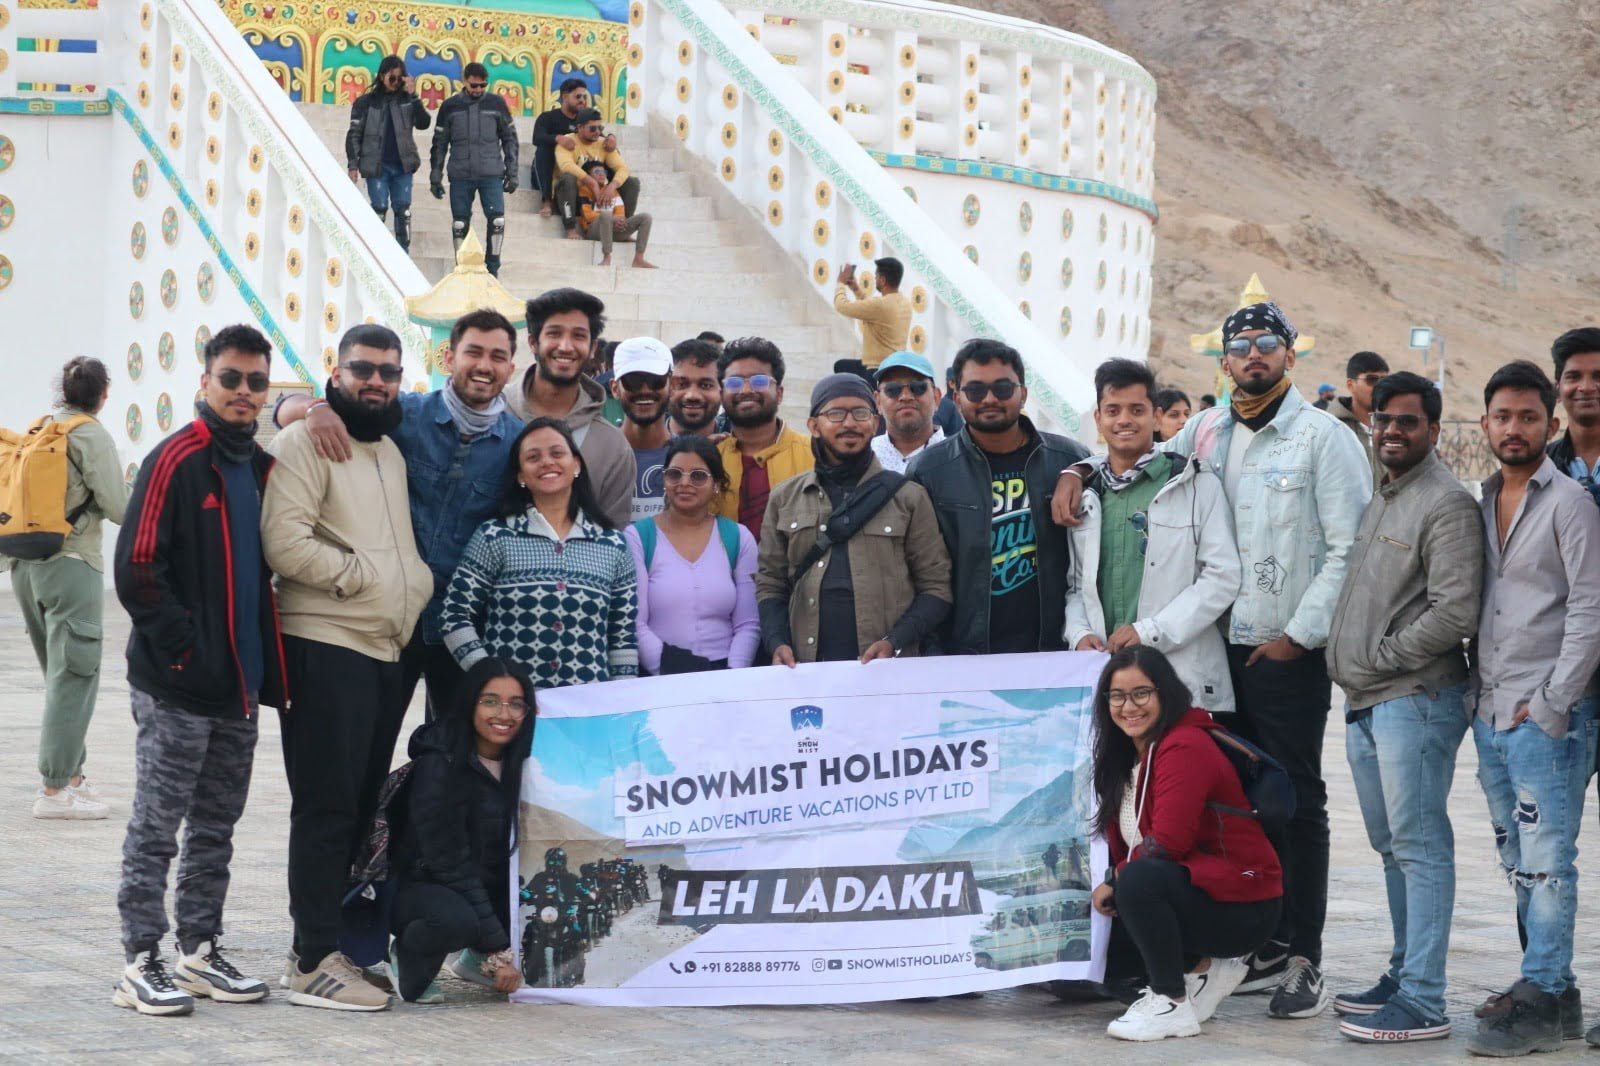 Snowmist Holidays & Adventure Vacations Pvt Ltd: Your Gateway to Unforgettable Adventures in Leh Ladakh, Himachal Pradesh & International